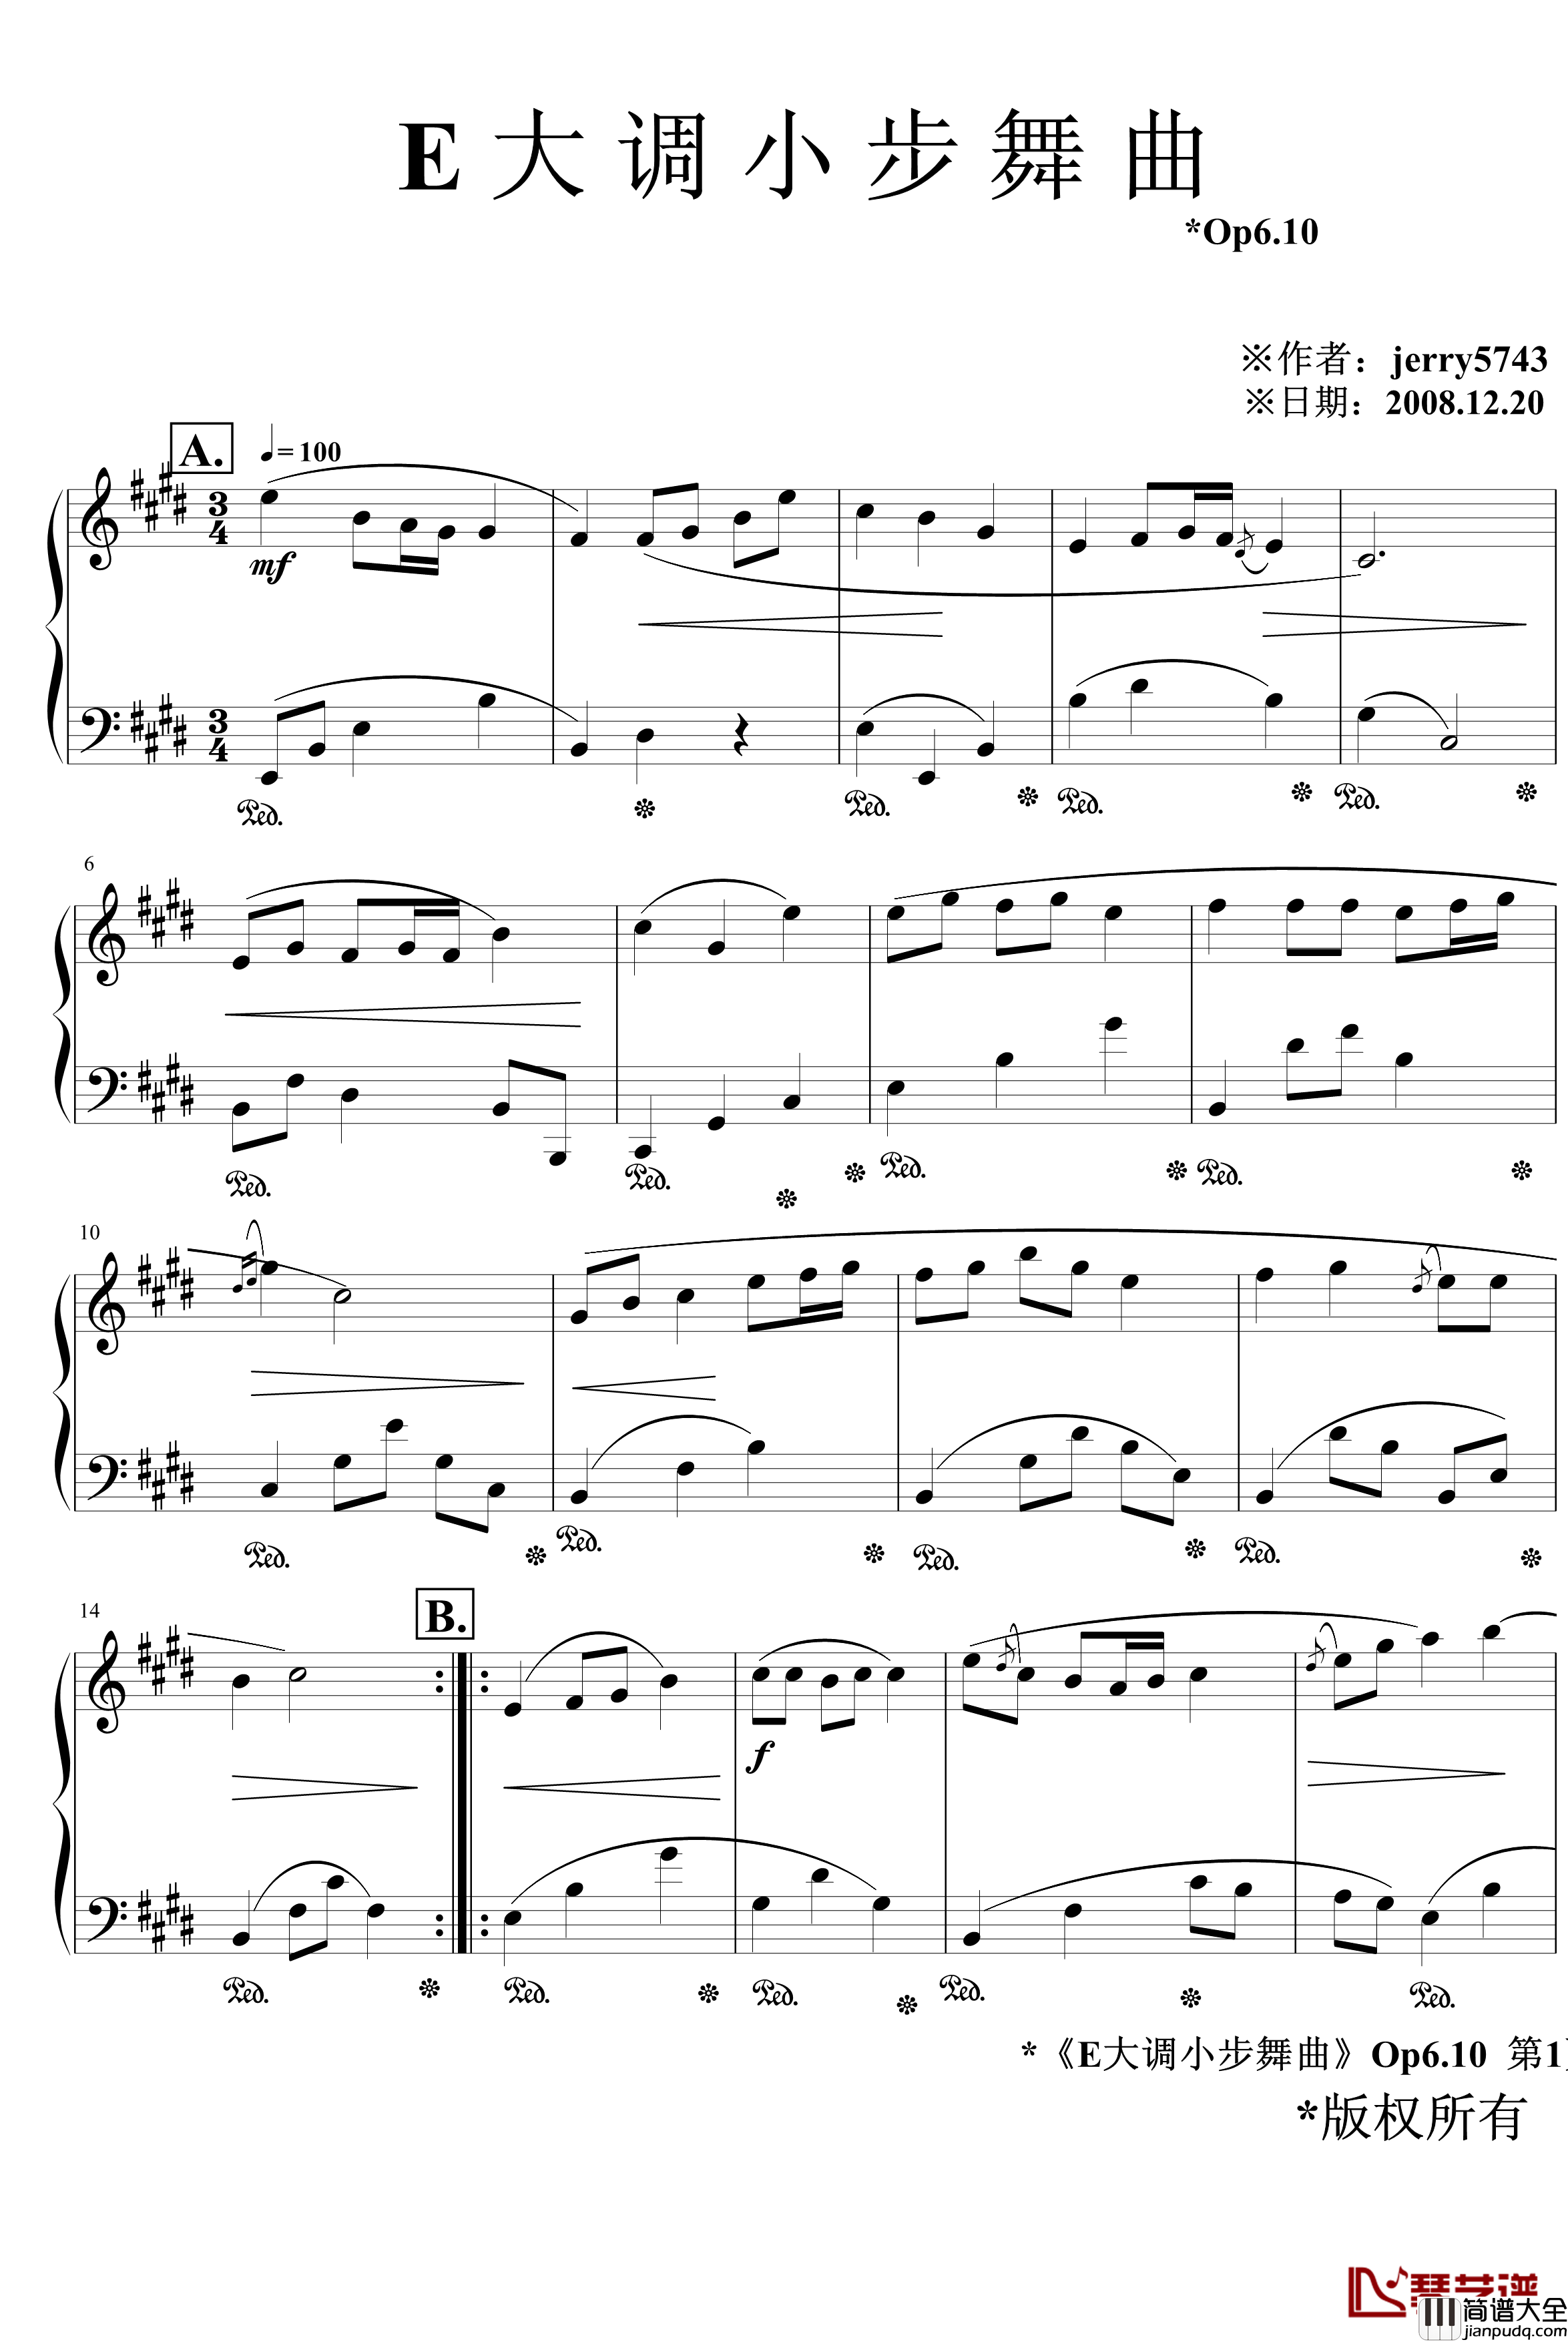 E大调小步舞曲Op6.10钢琴谱_jerry5743